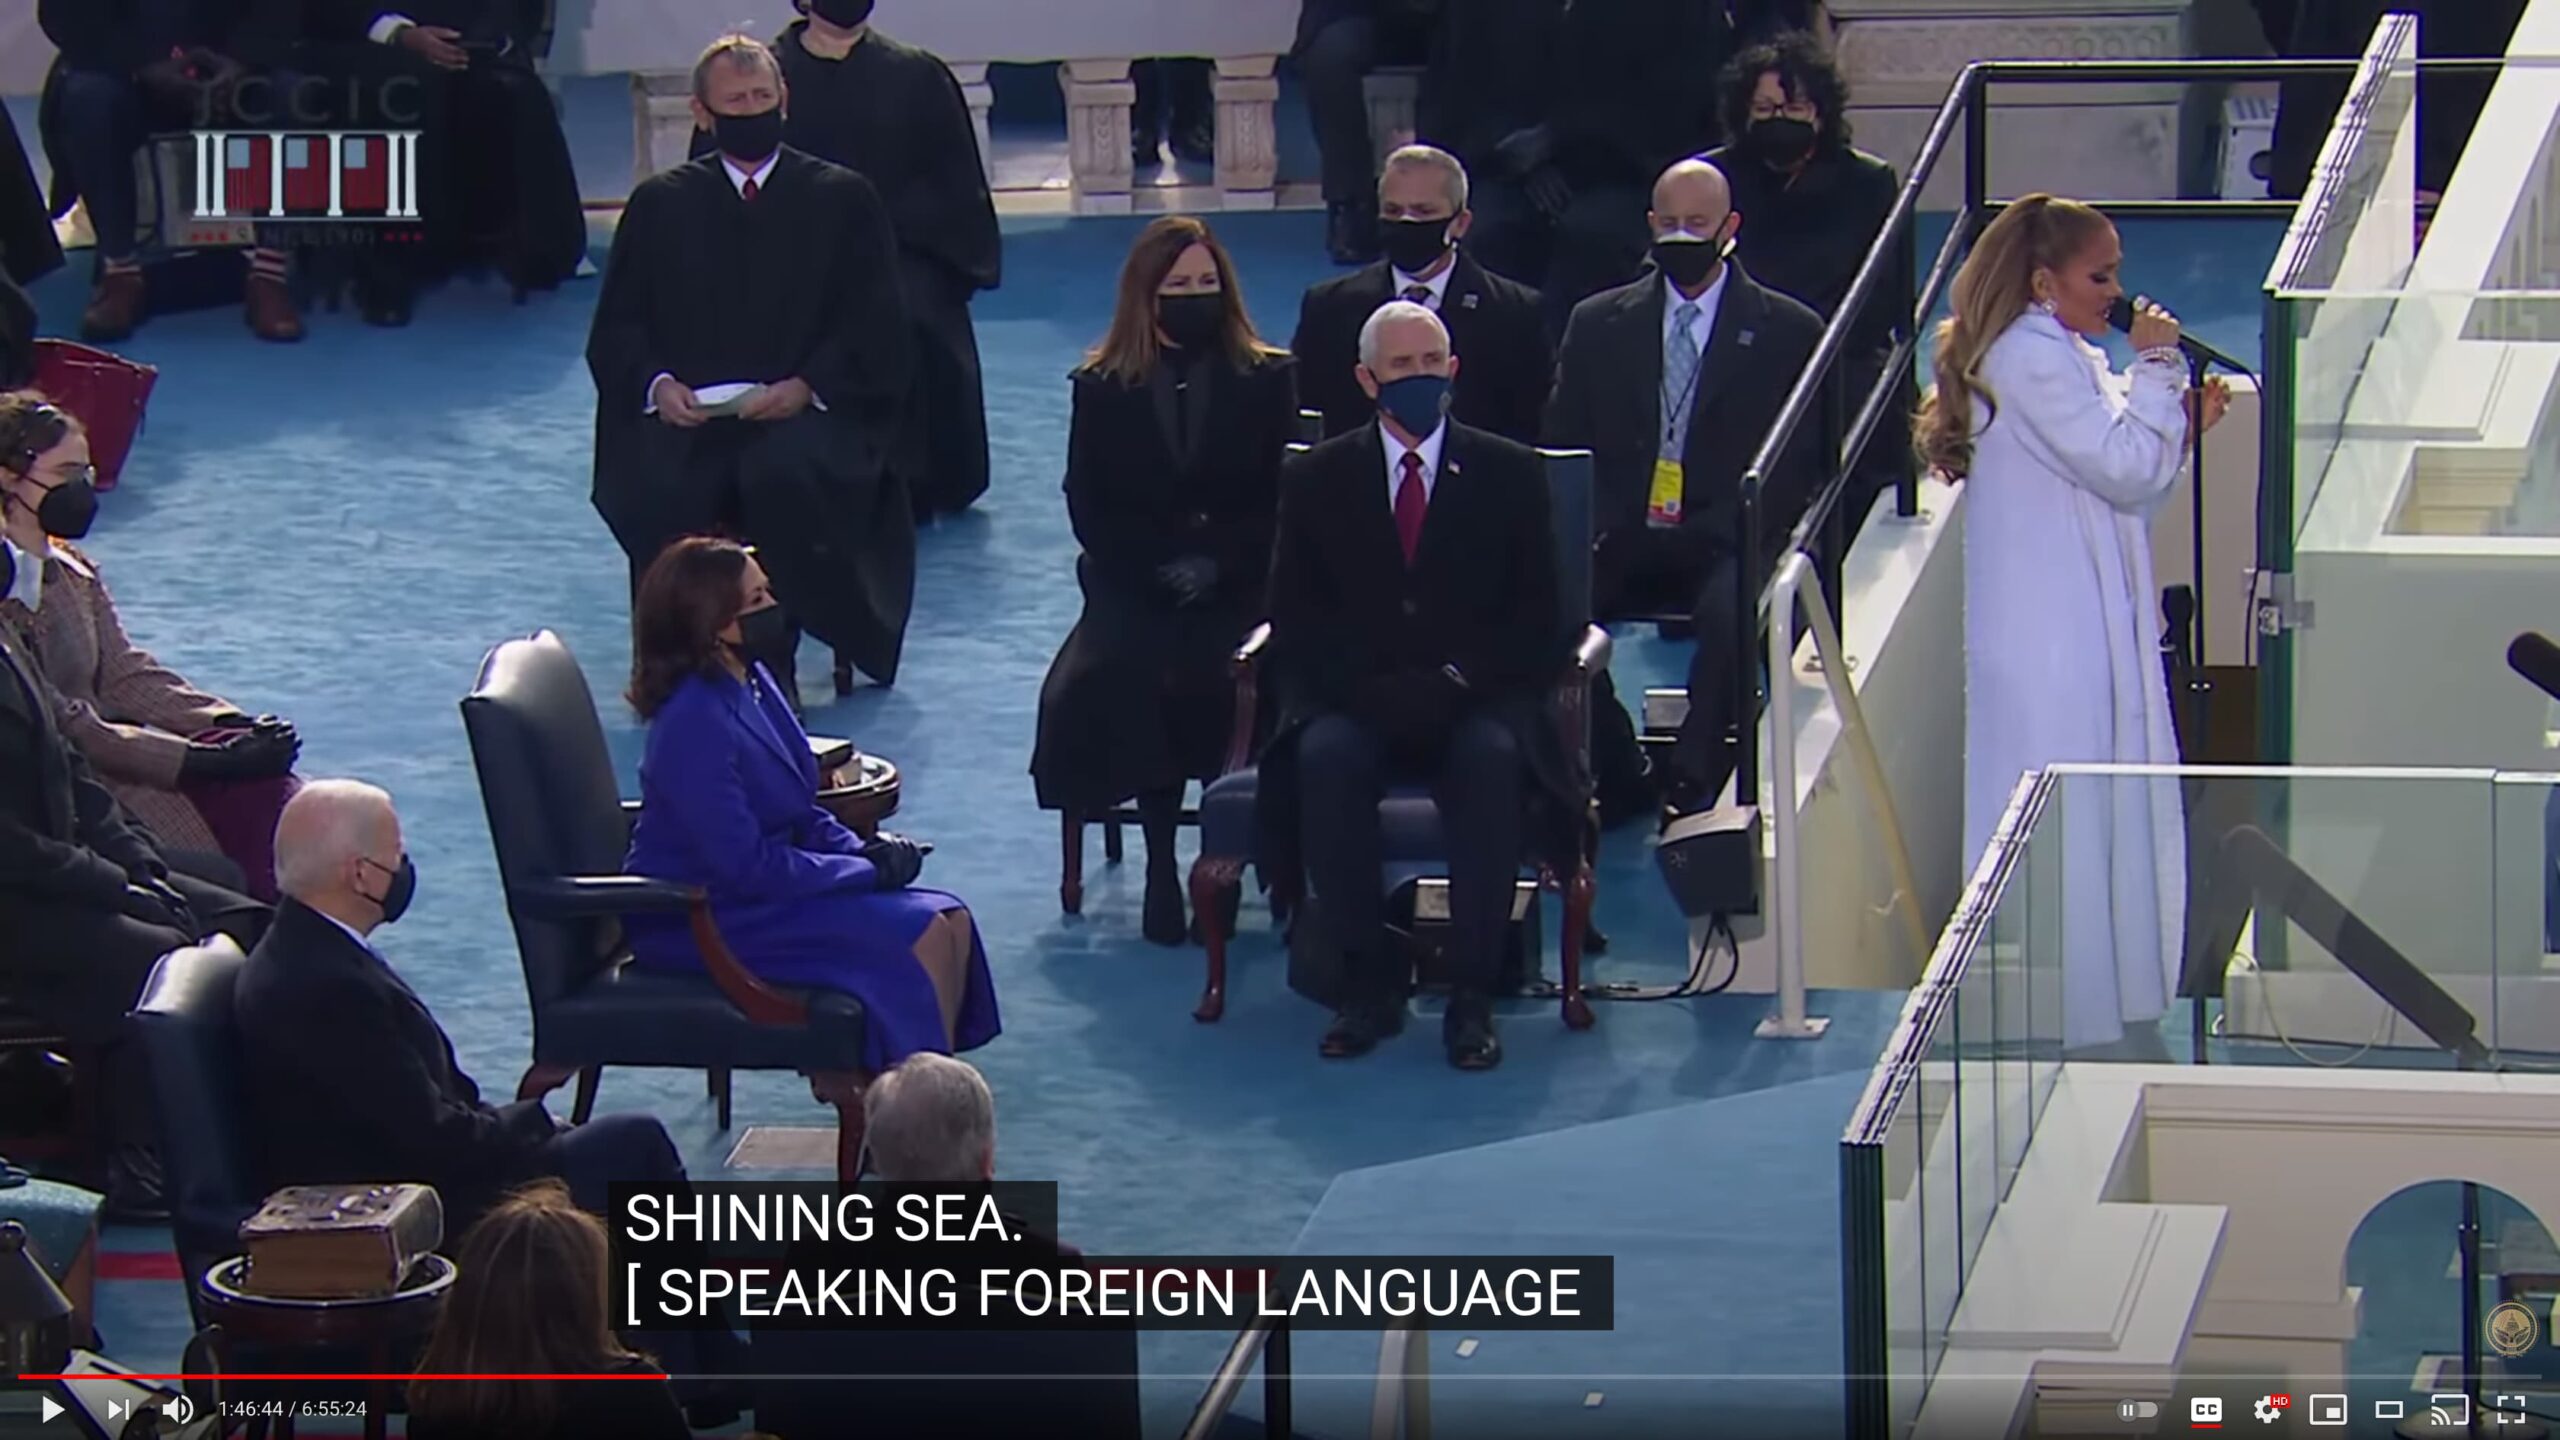 Caption of Jennifer Lopez speaking Spanish saying "speaking foreign language"